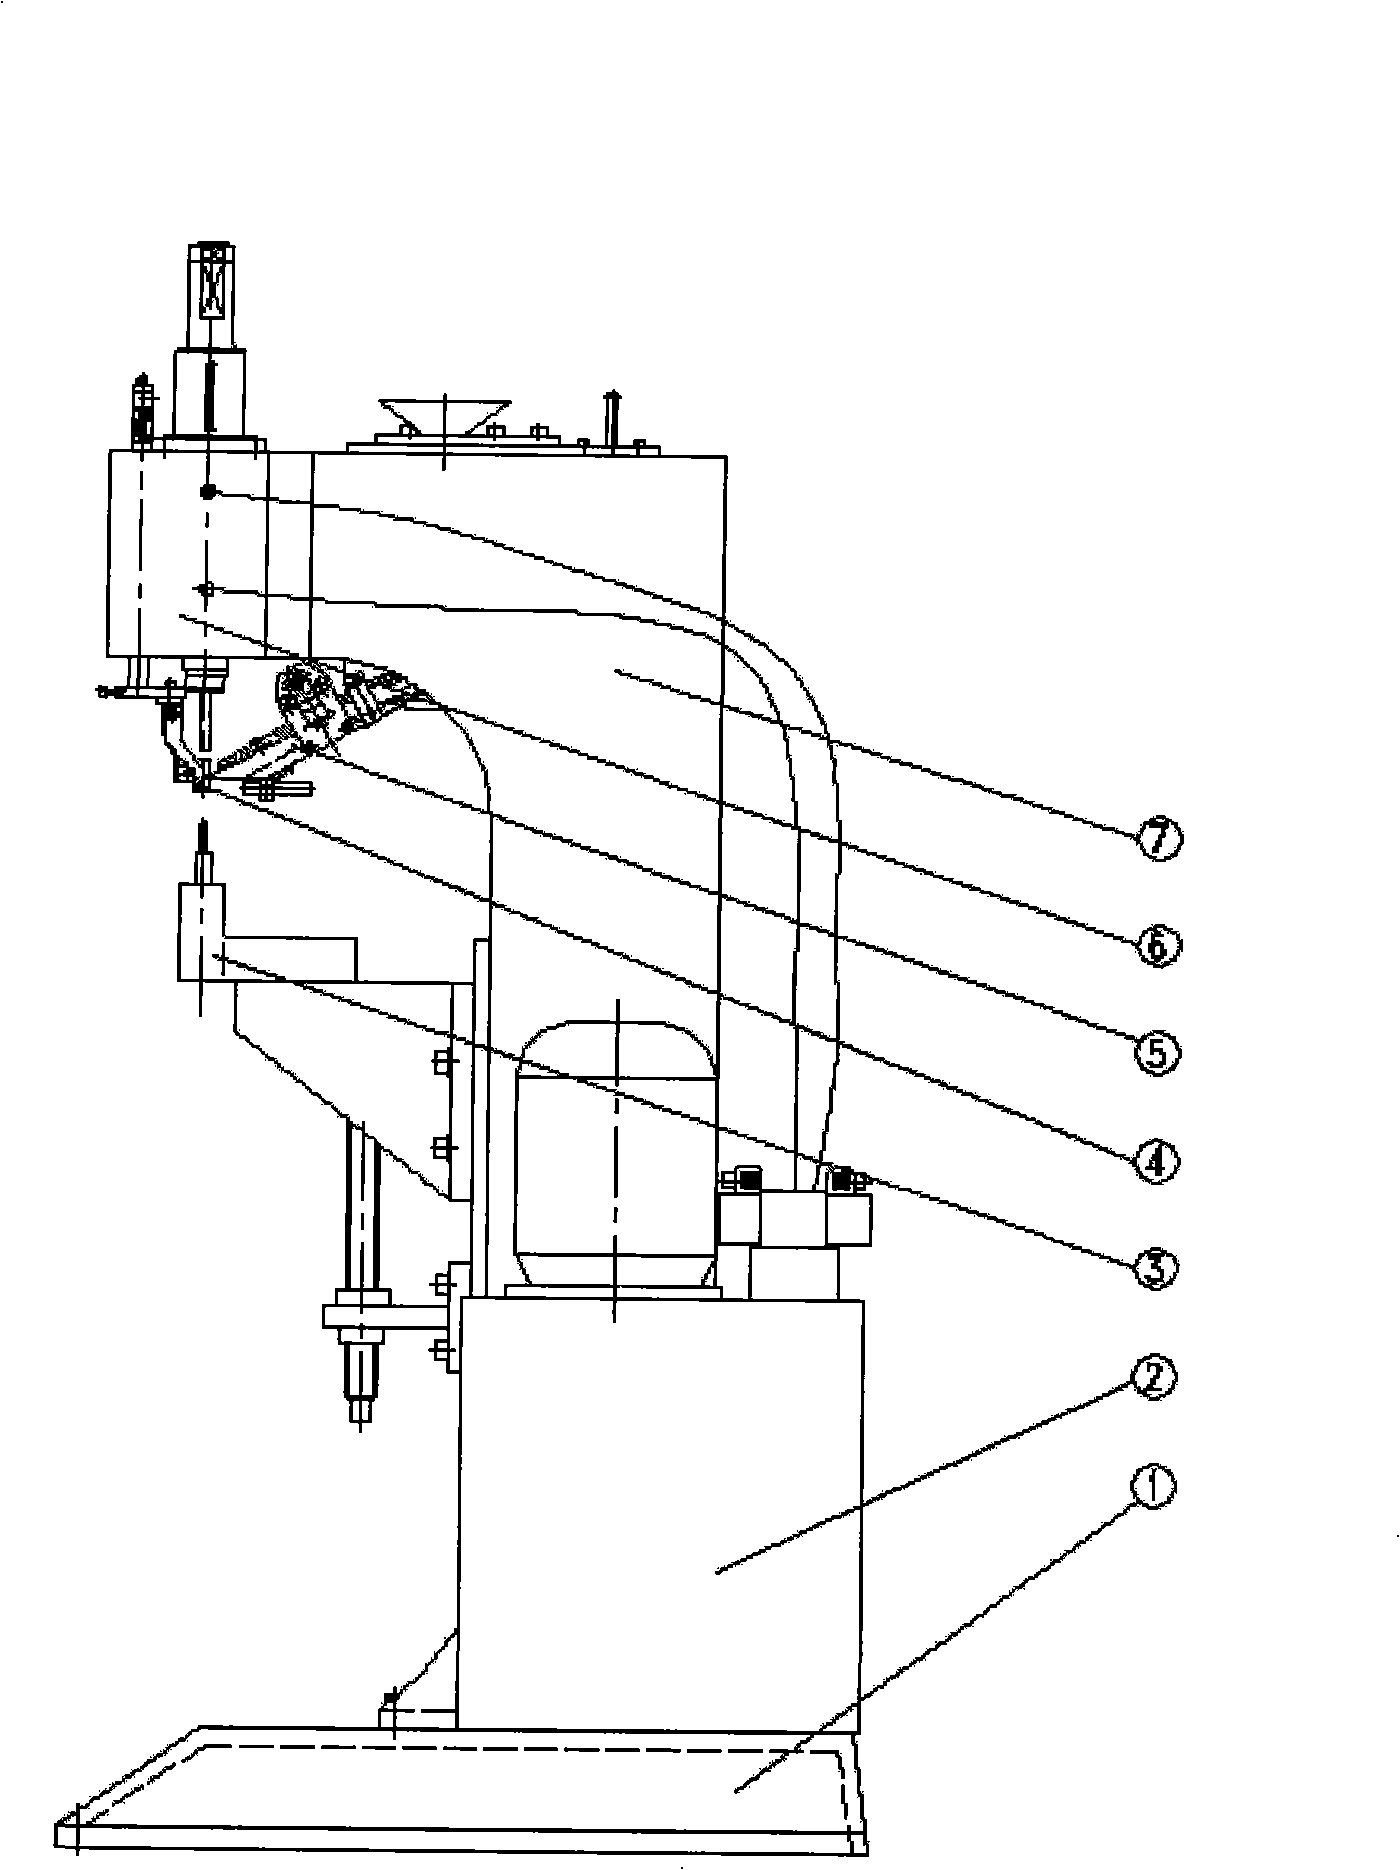 Automatic hydraulic riveting machine